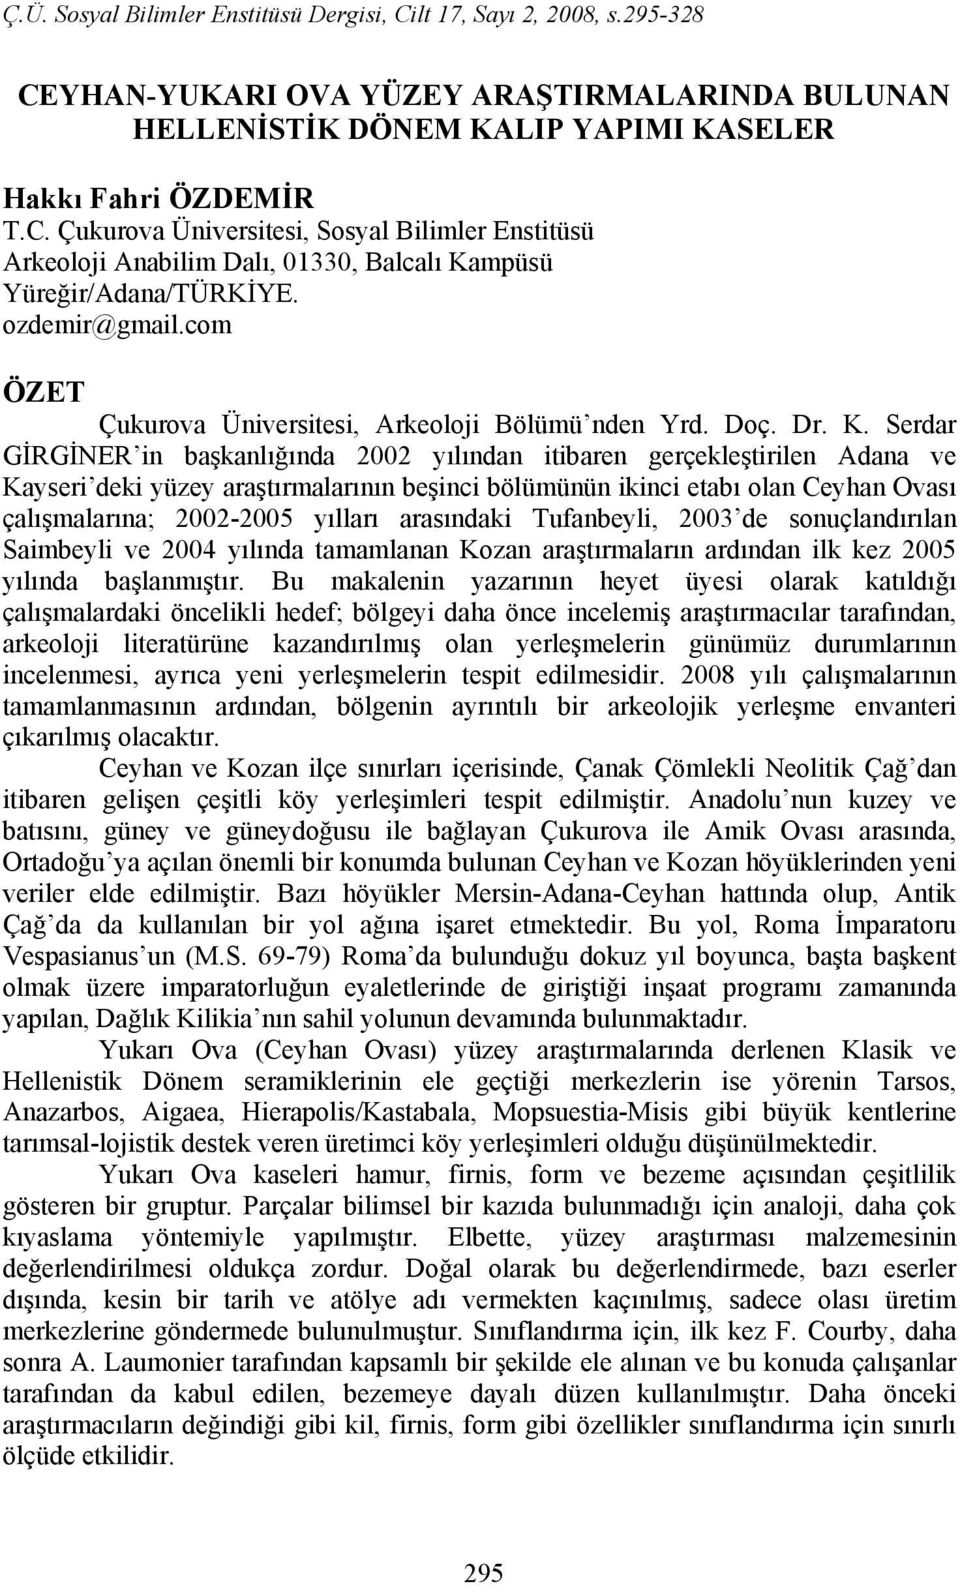 Serdar GİRGİNER in başkanlığında 2002 yılından itibaren gerçekleştirilen Adana ve Kayseri deki yüzey araştırmalarının beşinci bölümünün ikinci etabı olan Ceyhan Ovası çalışmalarına; 2002-2005 yılları